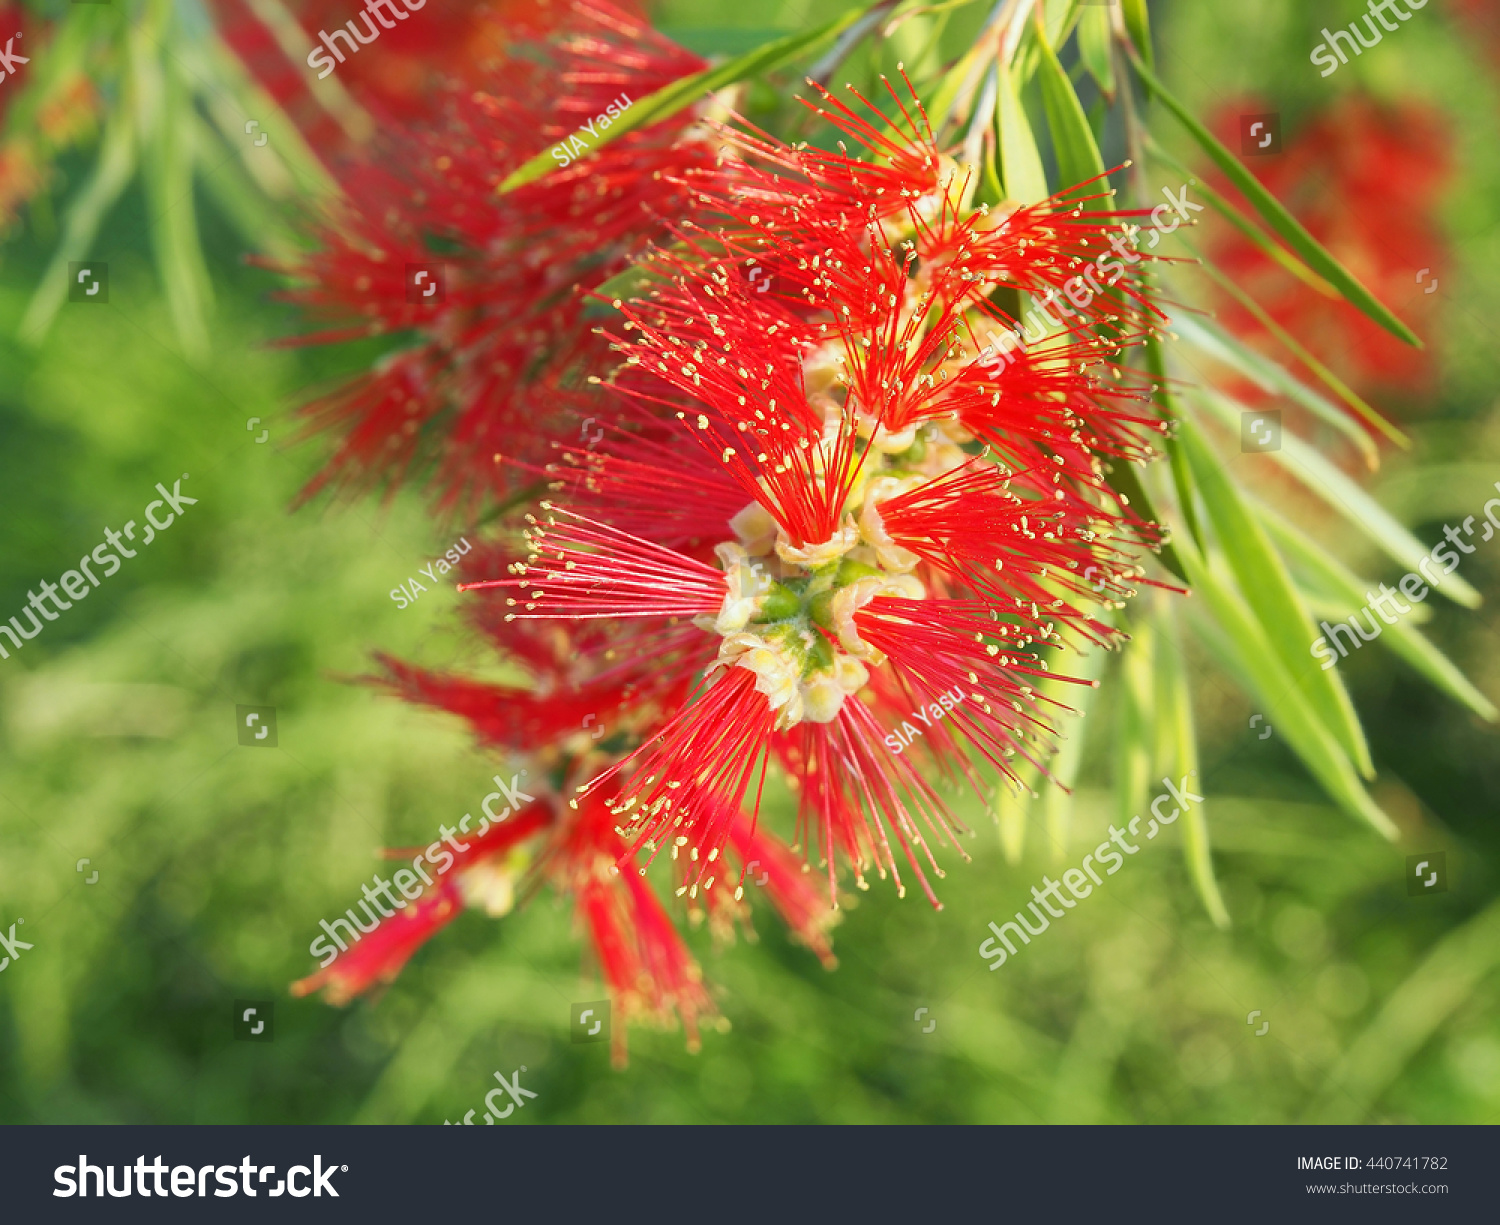 Bottlebrush Flower Stock Photo 440741782 : Shutterstock